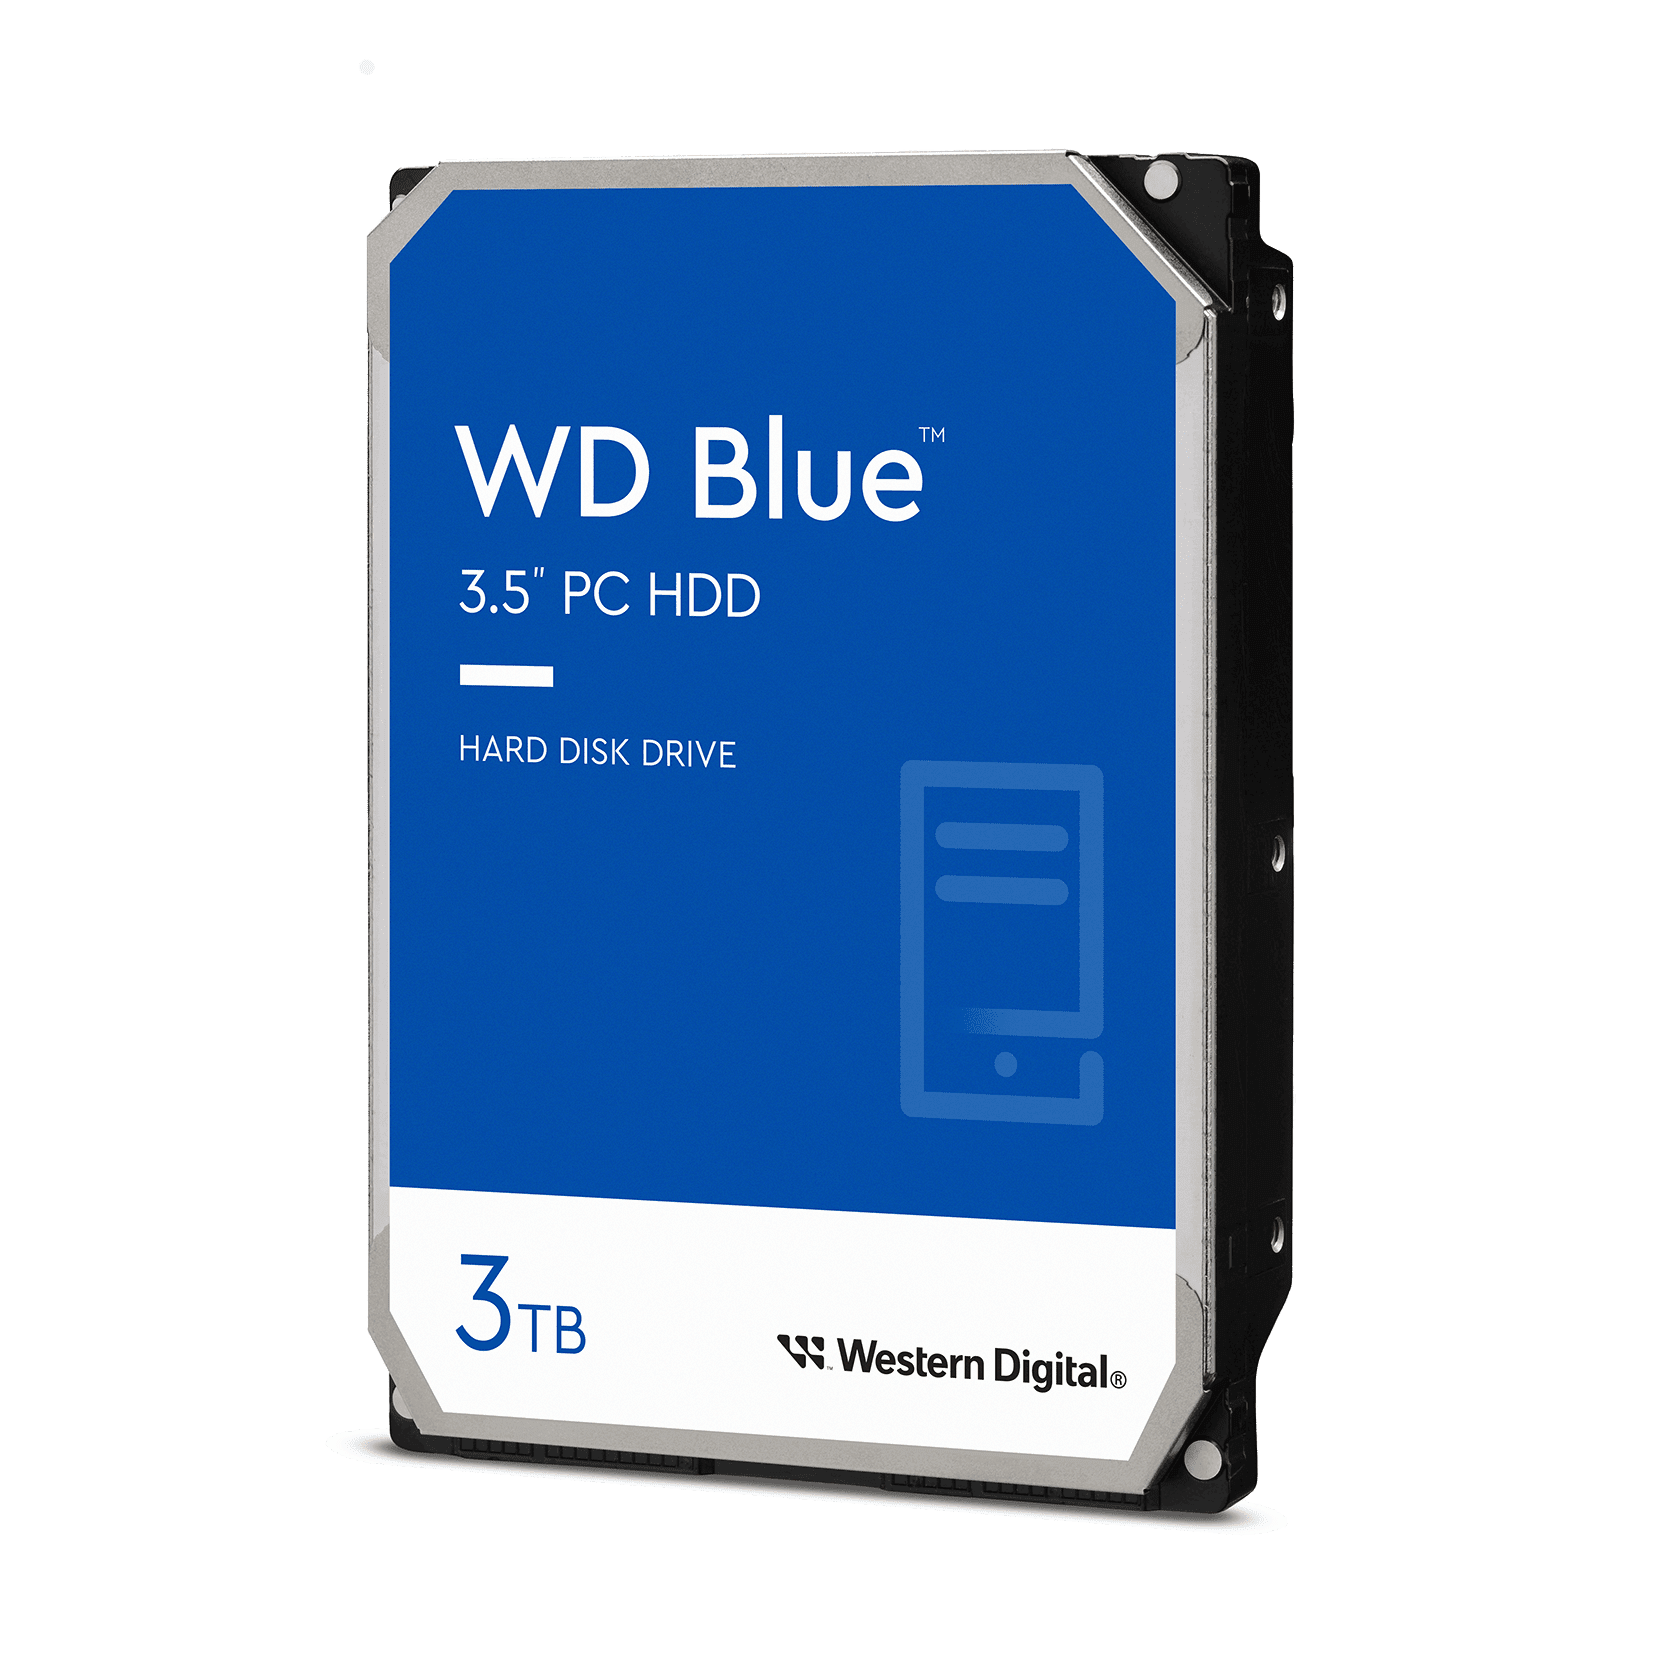 Western Digital 3TB WD Blue PC Desktop Hard Drive, 3.5'' Internal CMR Hard  Drive, 5400 RPM, 64MB Cache WD30EZRZ